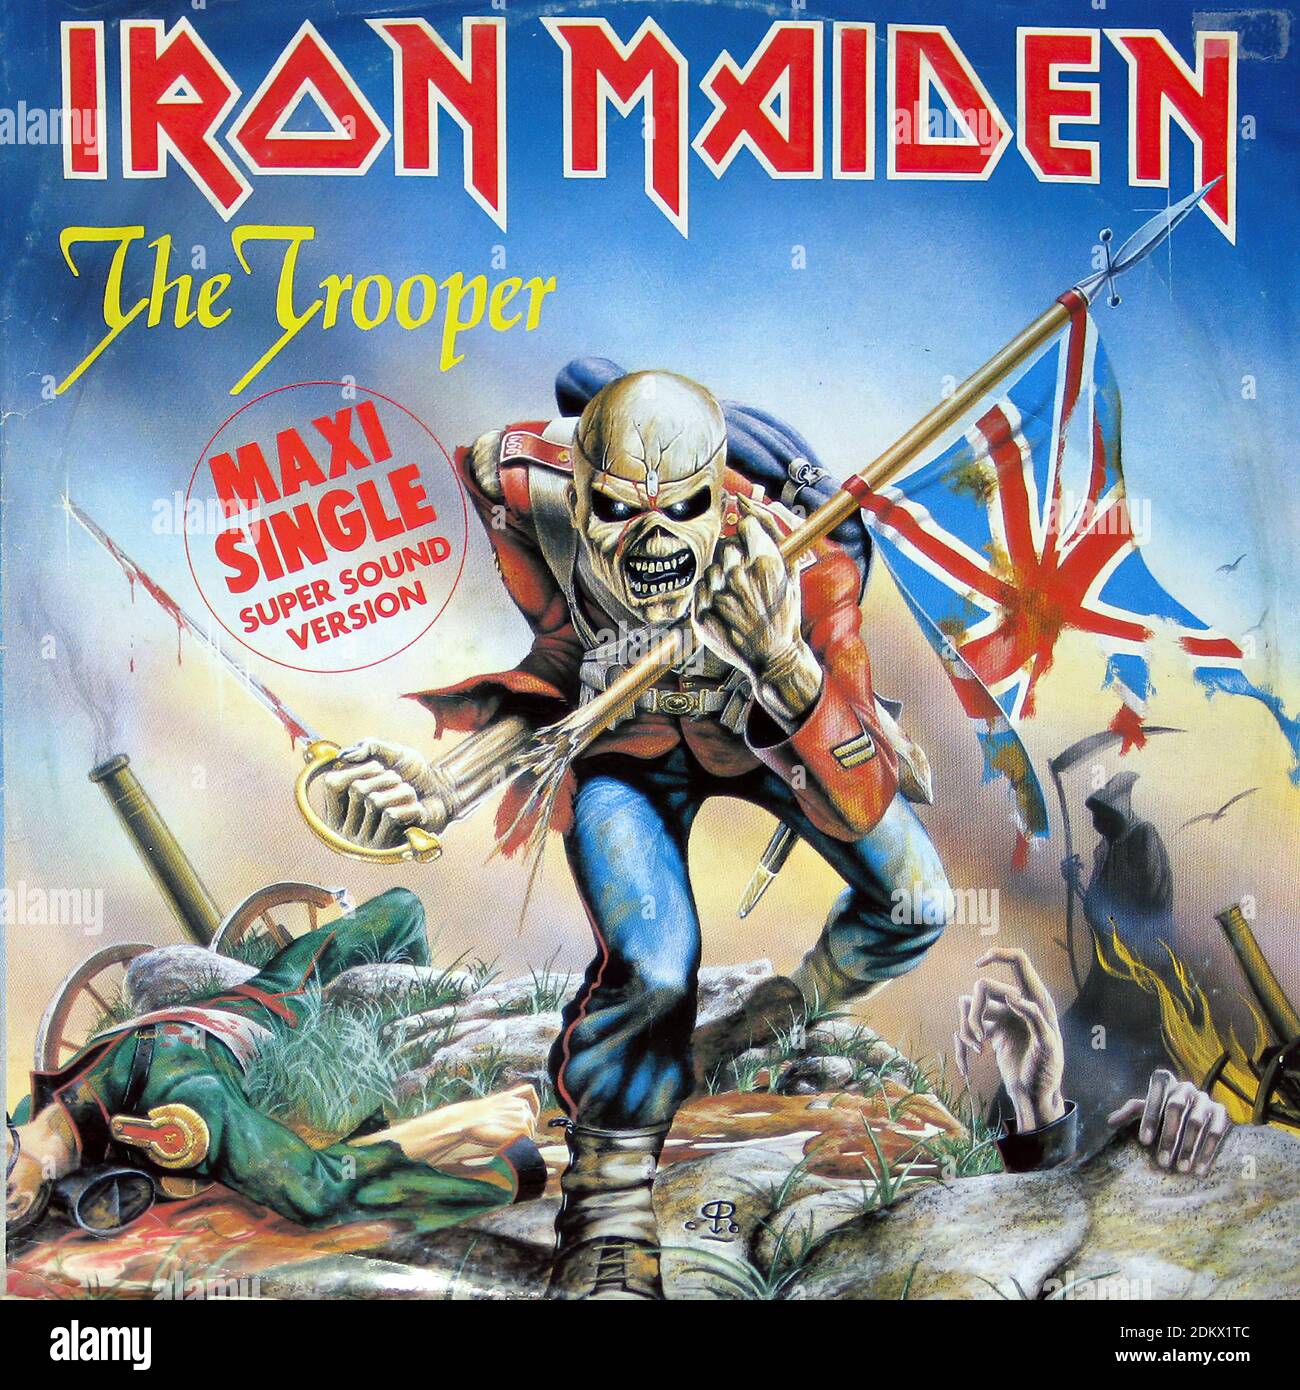 IRON MAIDEN the Trooper (12  Maxi Single) Versione Super Sound - copertina Vintage Vinyl Record Foto Stock